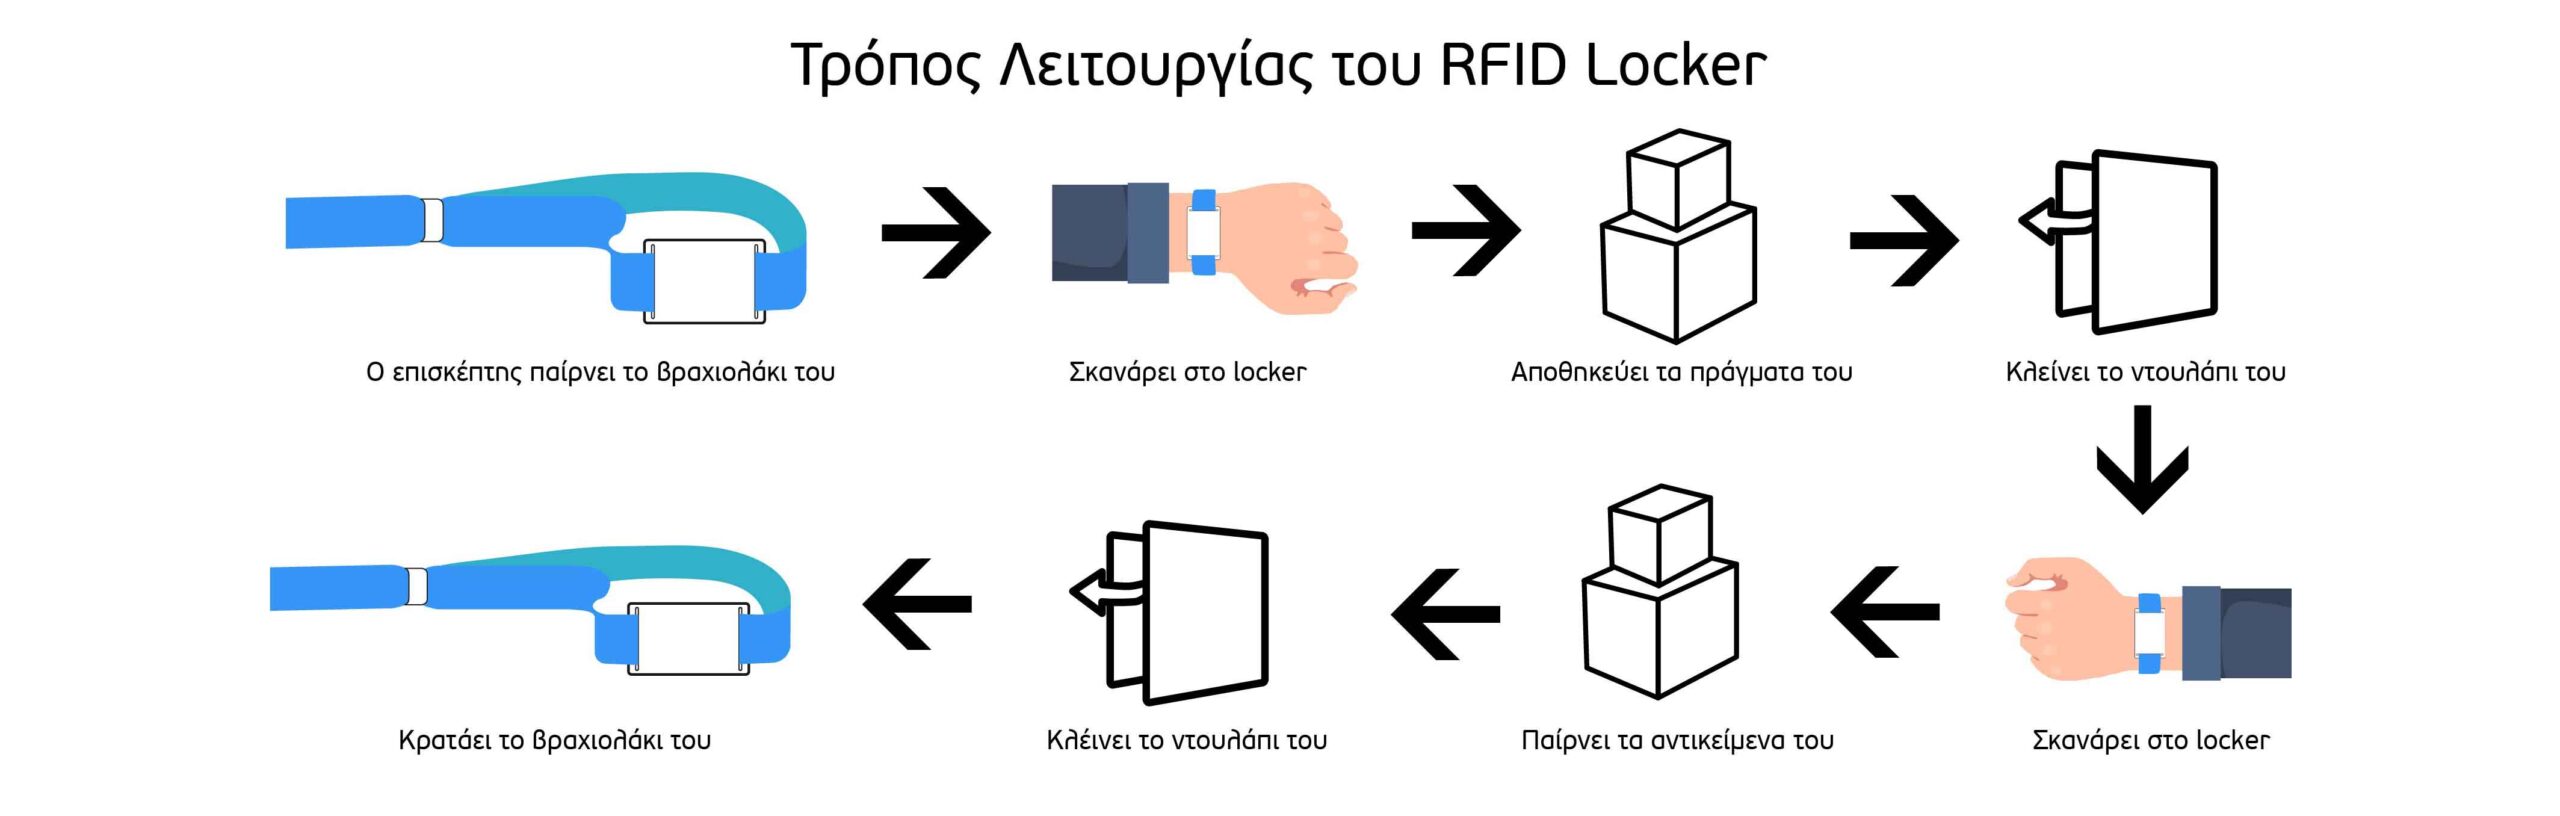 rfid_lockers